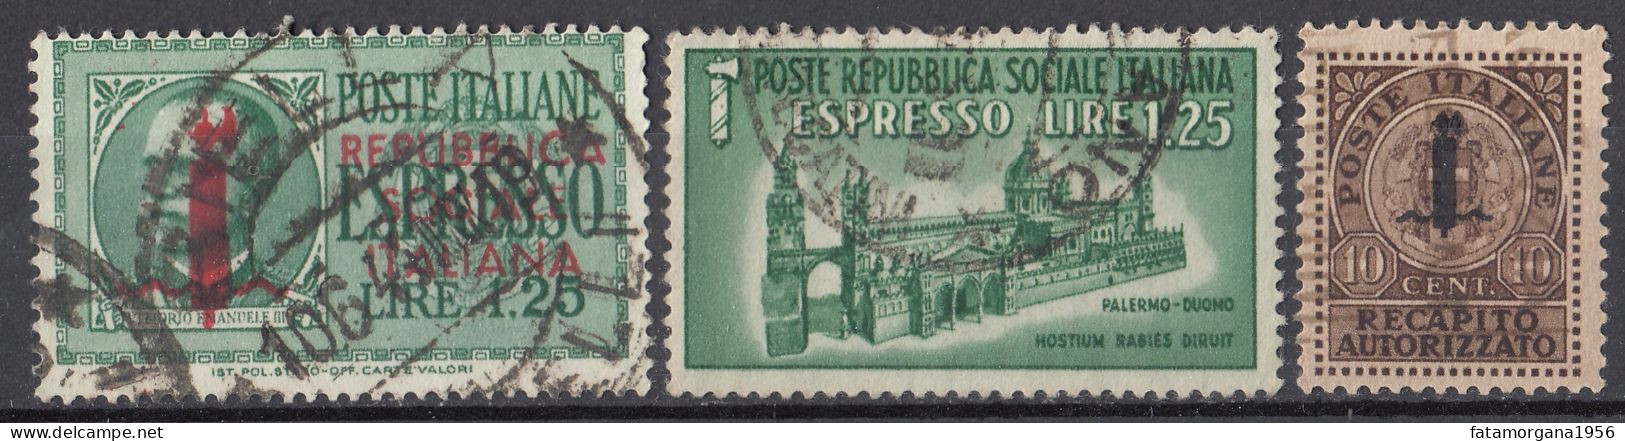 ITALIA, REPUBBLICA SOCIALE - 1944 - Lotto Di 3 Di Francobolli Per Espresso/recapito Autorizzato Usati: Yvert 3, 5 E 6. - Eilsendung (Eilpost)